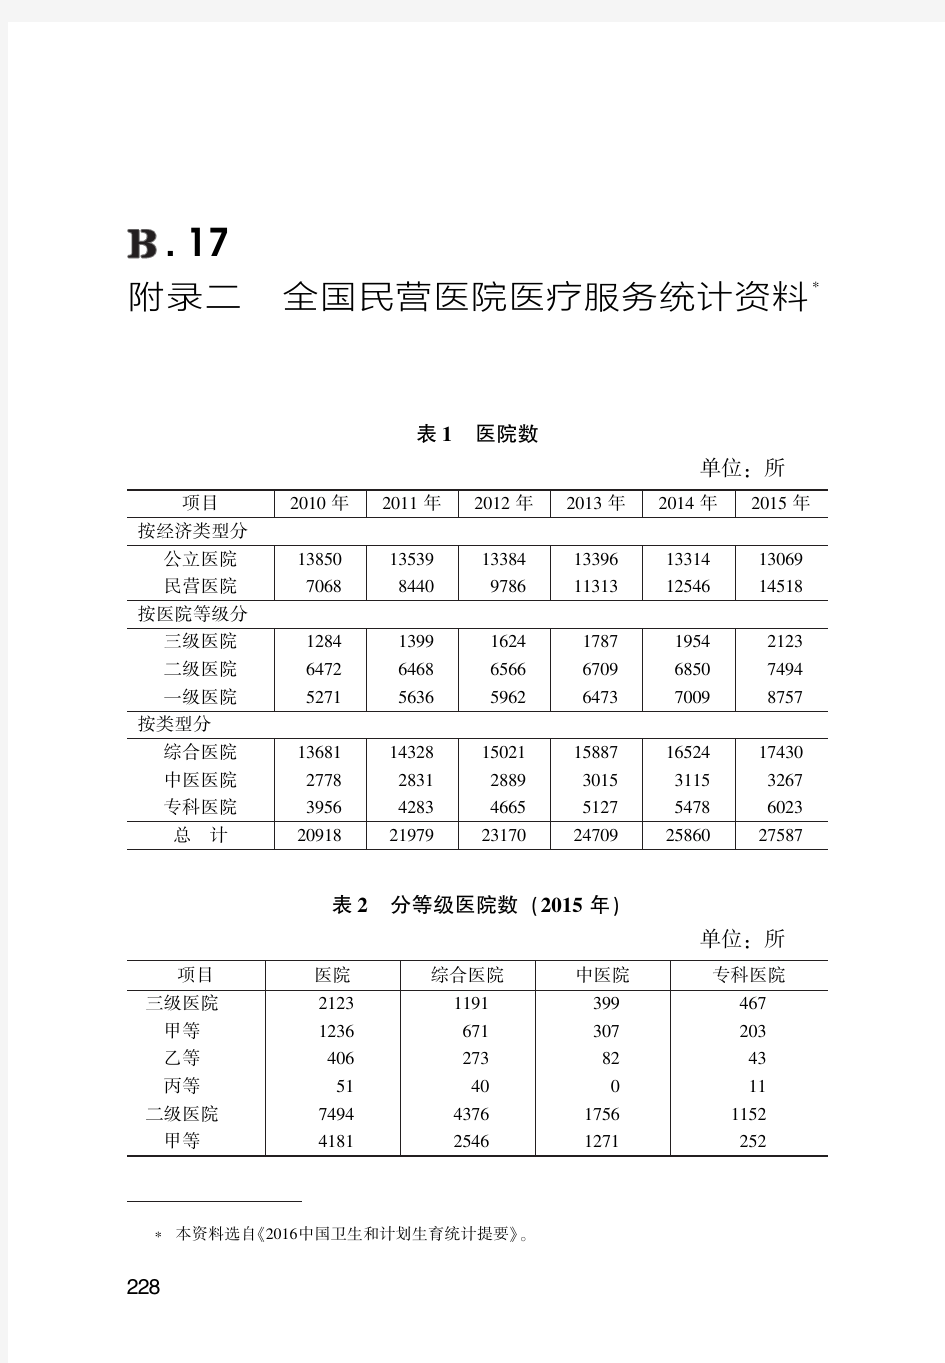 中国民营医院医疗服务统计资料(2010-2015)